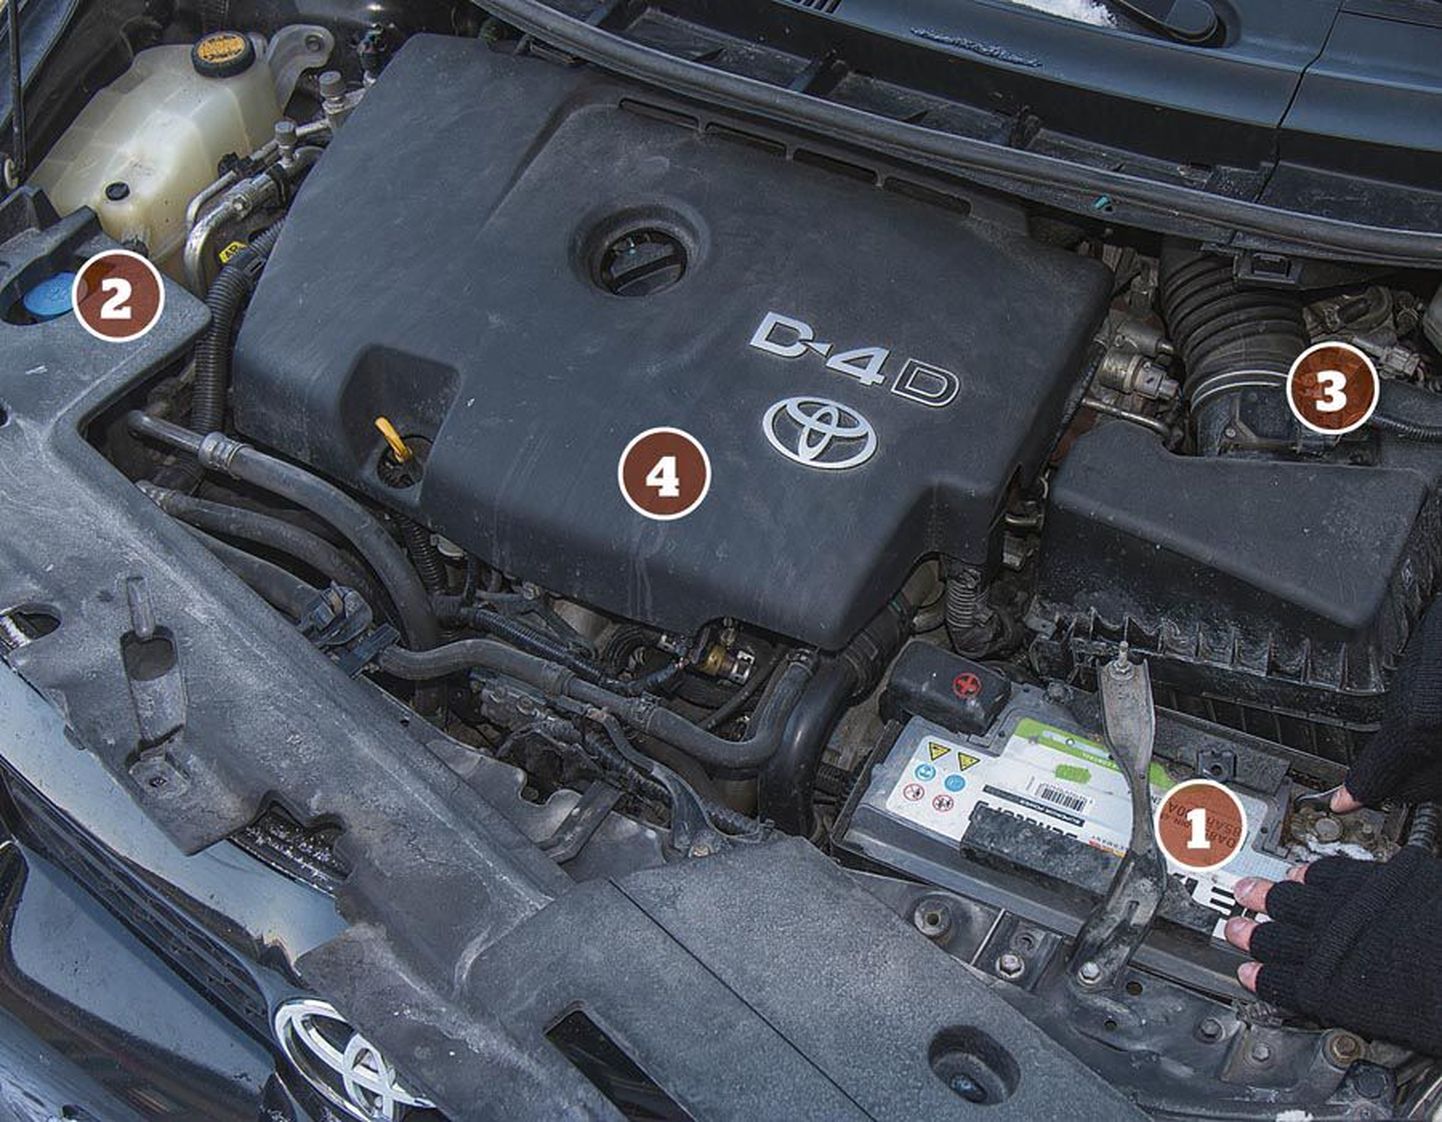 Vägevad külmakraadid on tühjaks imenud nii mõnegi auto aku (1). Pakasega võib aga kapoti all muret valmistada ka mõni teine koht. Paljudel autodel on aknapesuvedeliku paakides (2) ära külmunud liiga väikse külmumistemperatuuriga pesuaine ning mõnel kütusefilter (3). Diiselmootoriga autodel võivad käivitumist takistada väsinud eelsüüteküünlad (4).